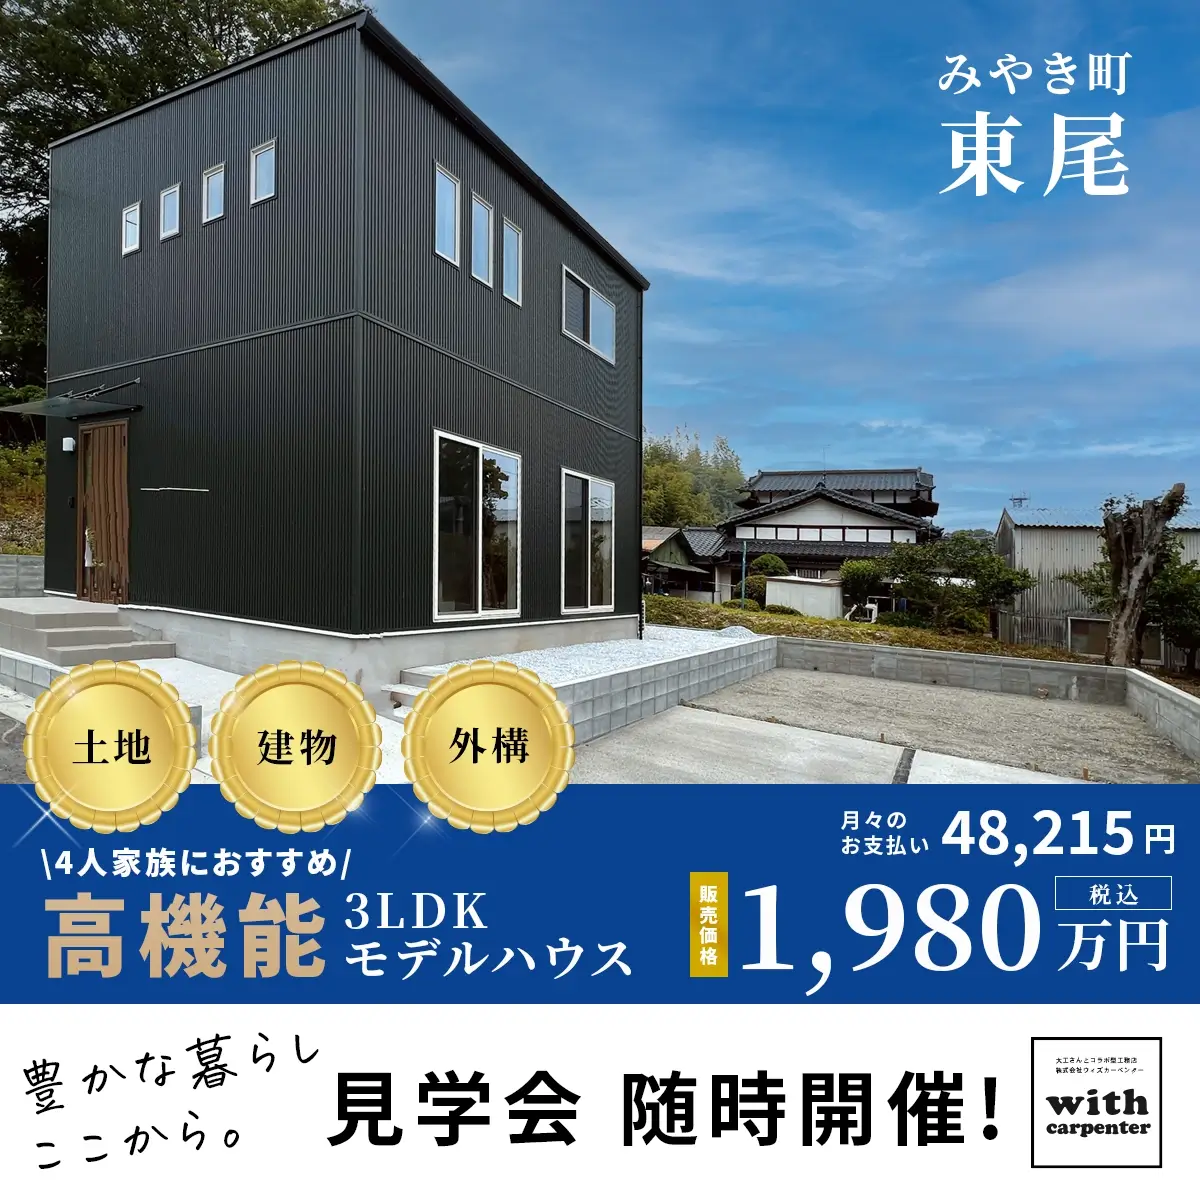 モデルハウスが1980万円で販売中